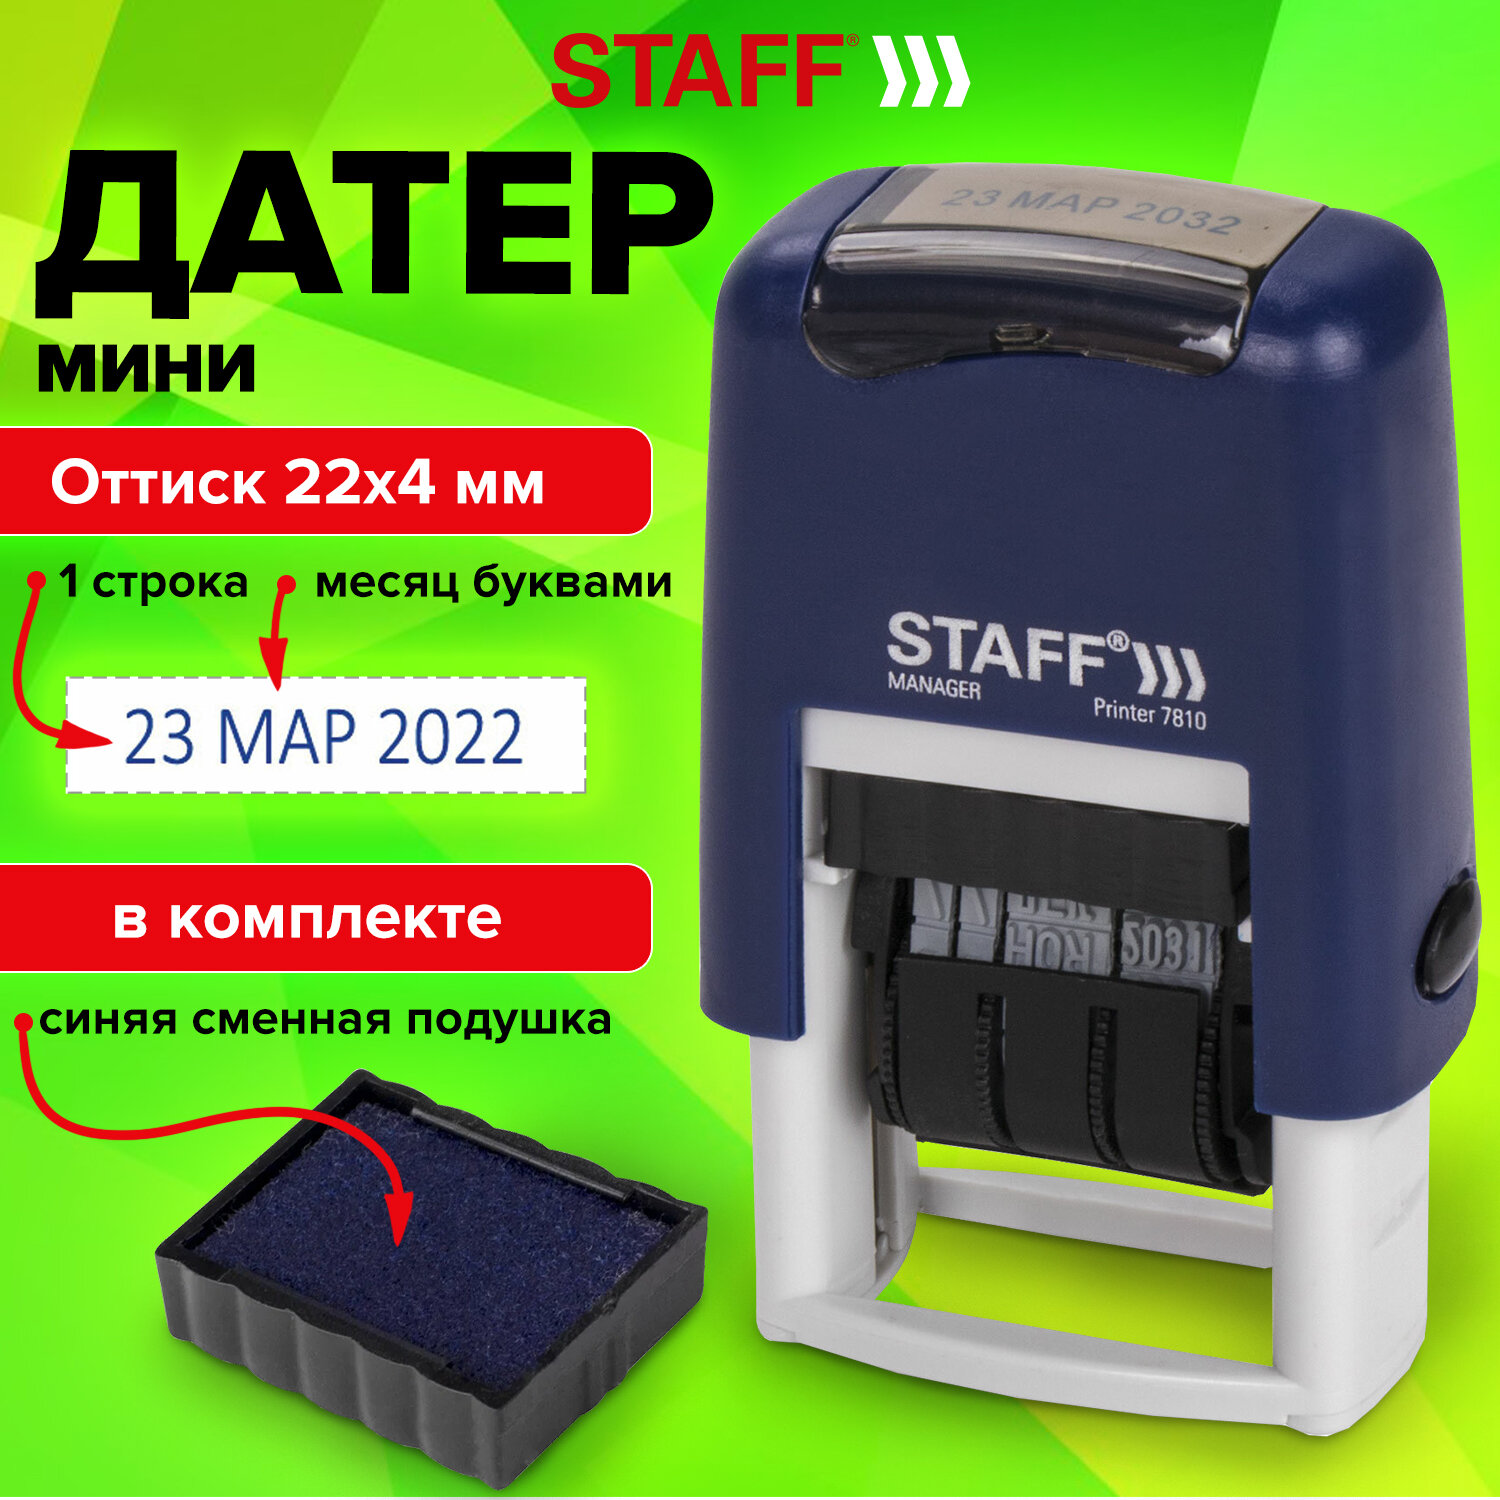 STAFF - STAFF 237432